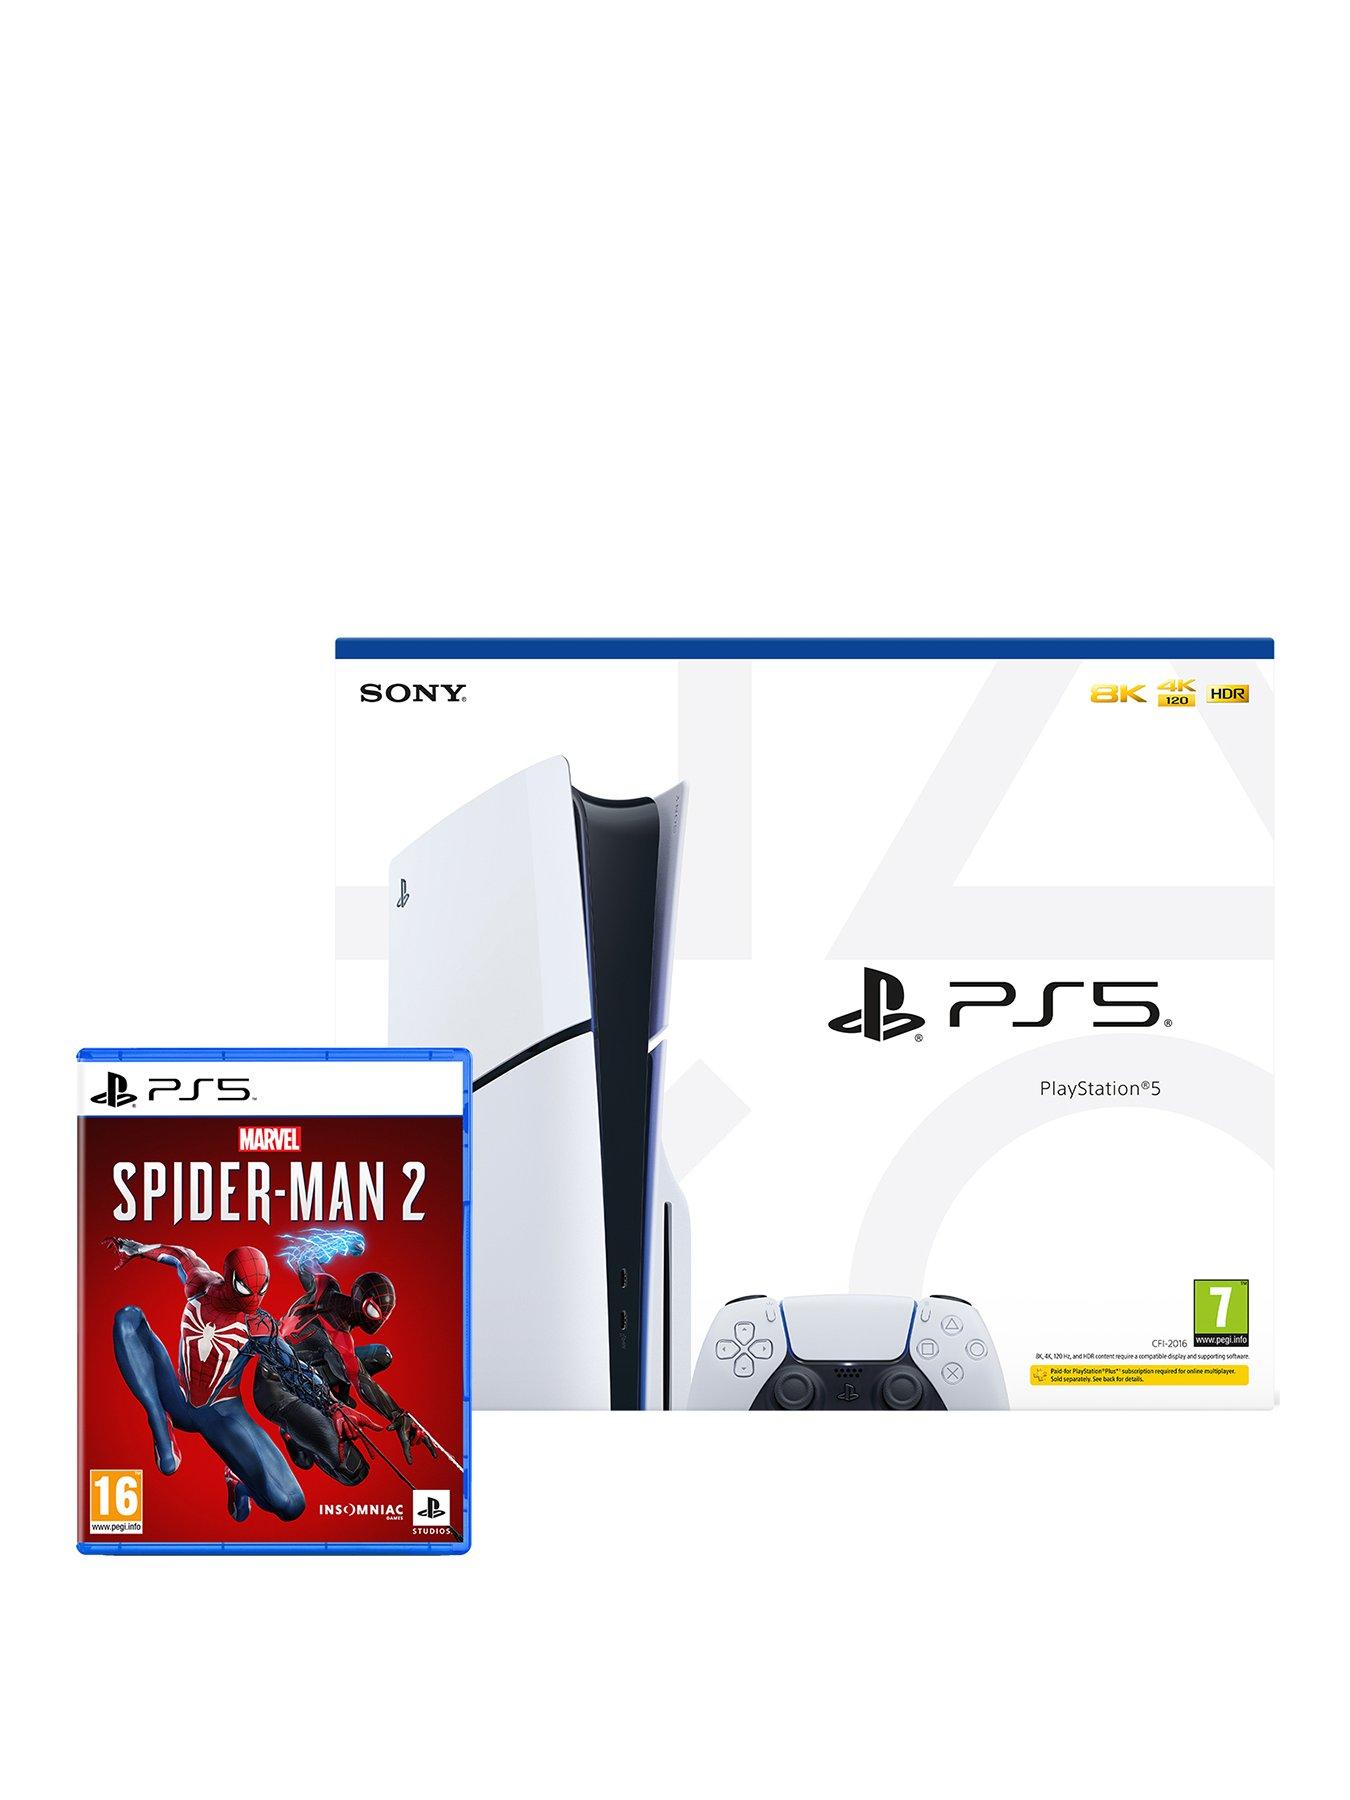 PlayStation®5, Play Has No Limits